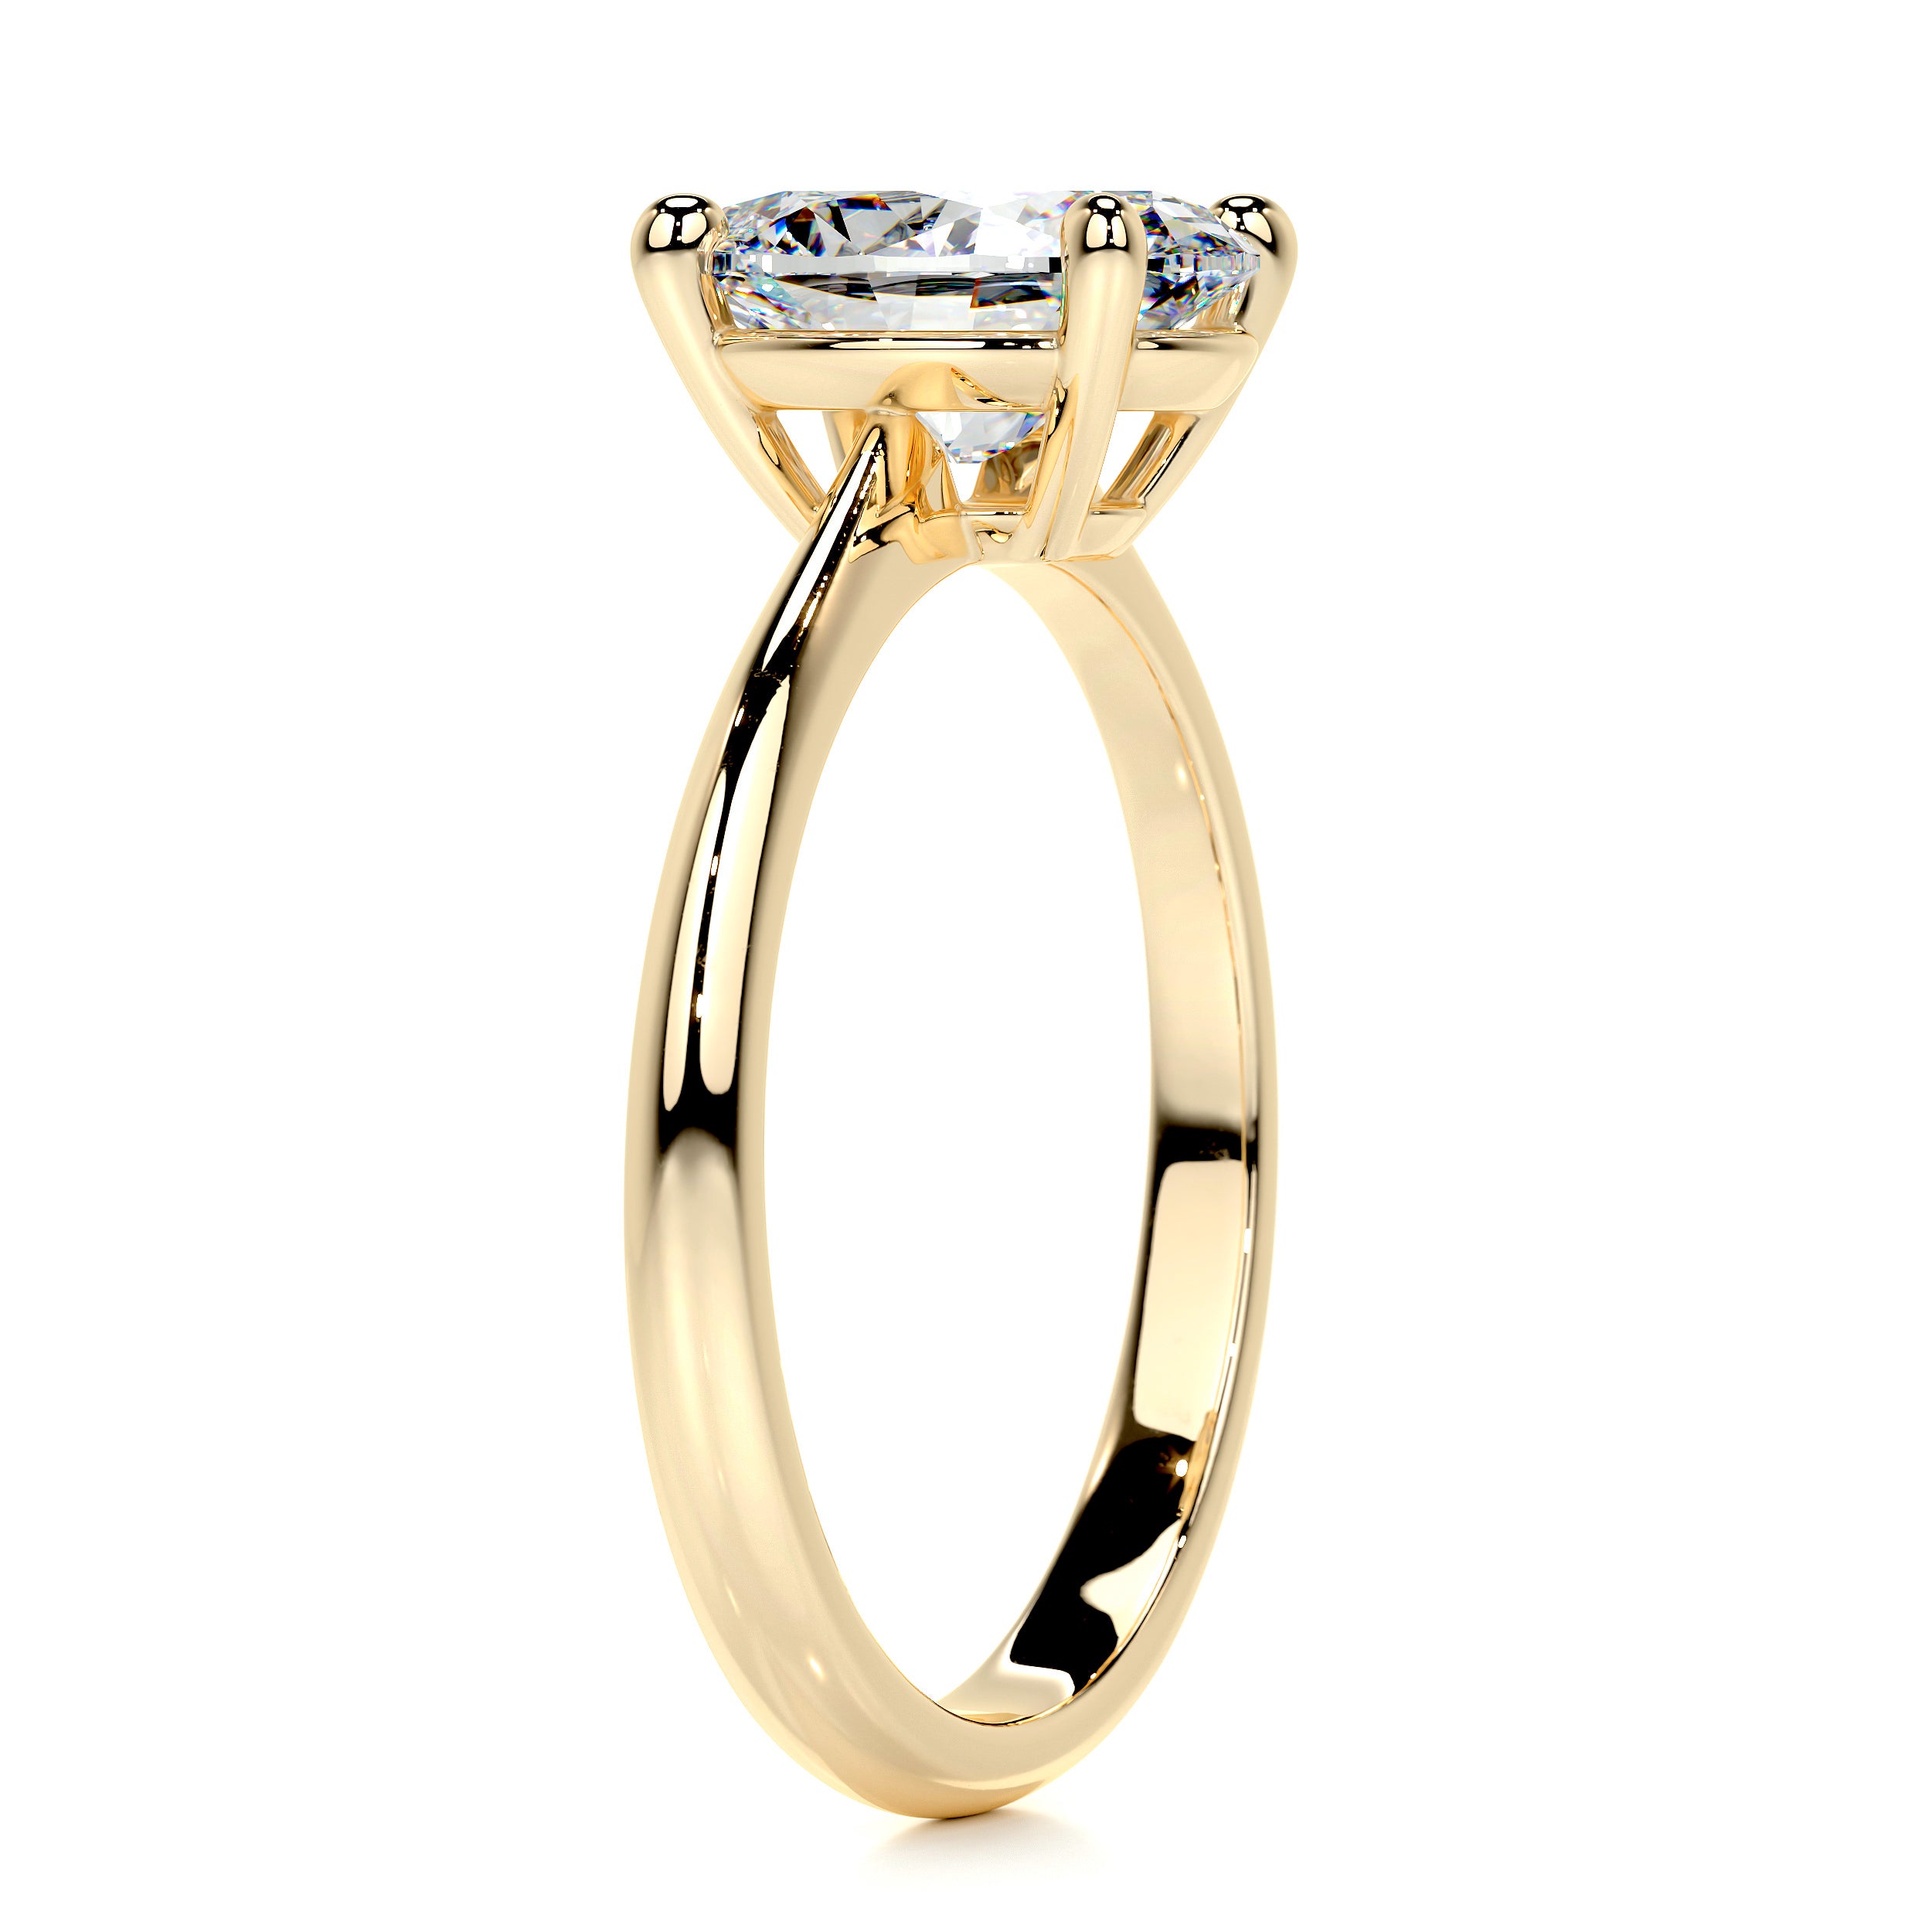 Julia Moissanite Ring   (2.15 Carat) -18K Yellow Gold